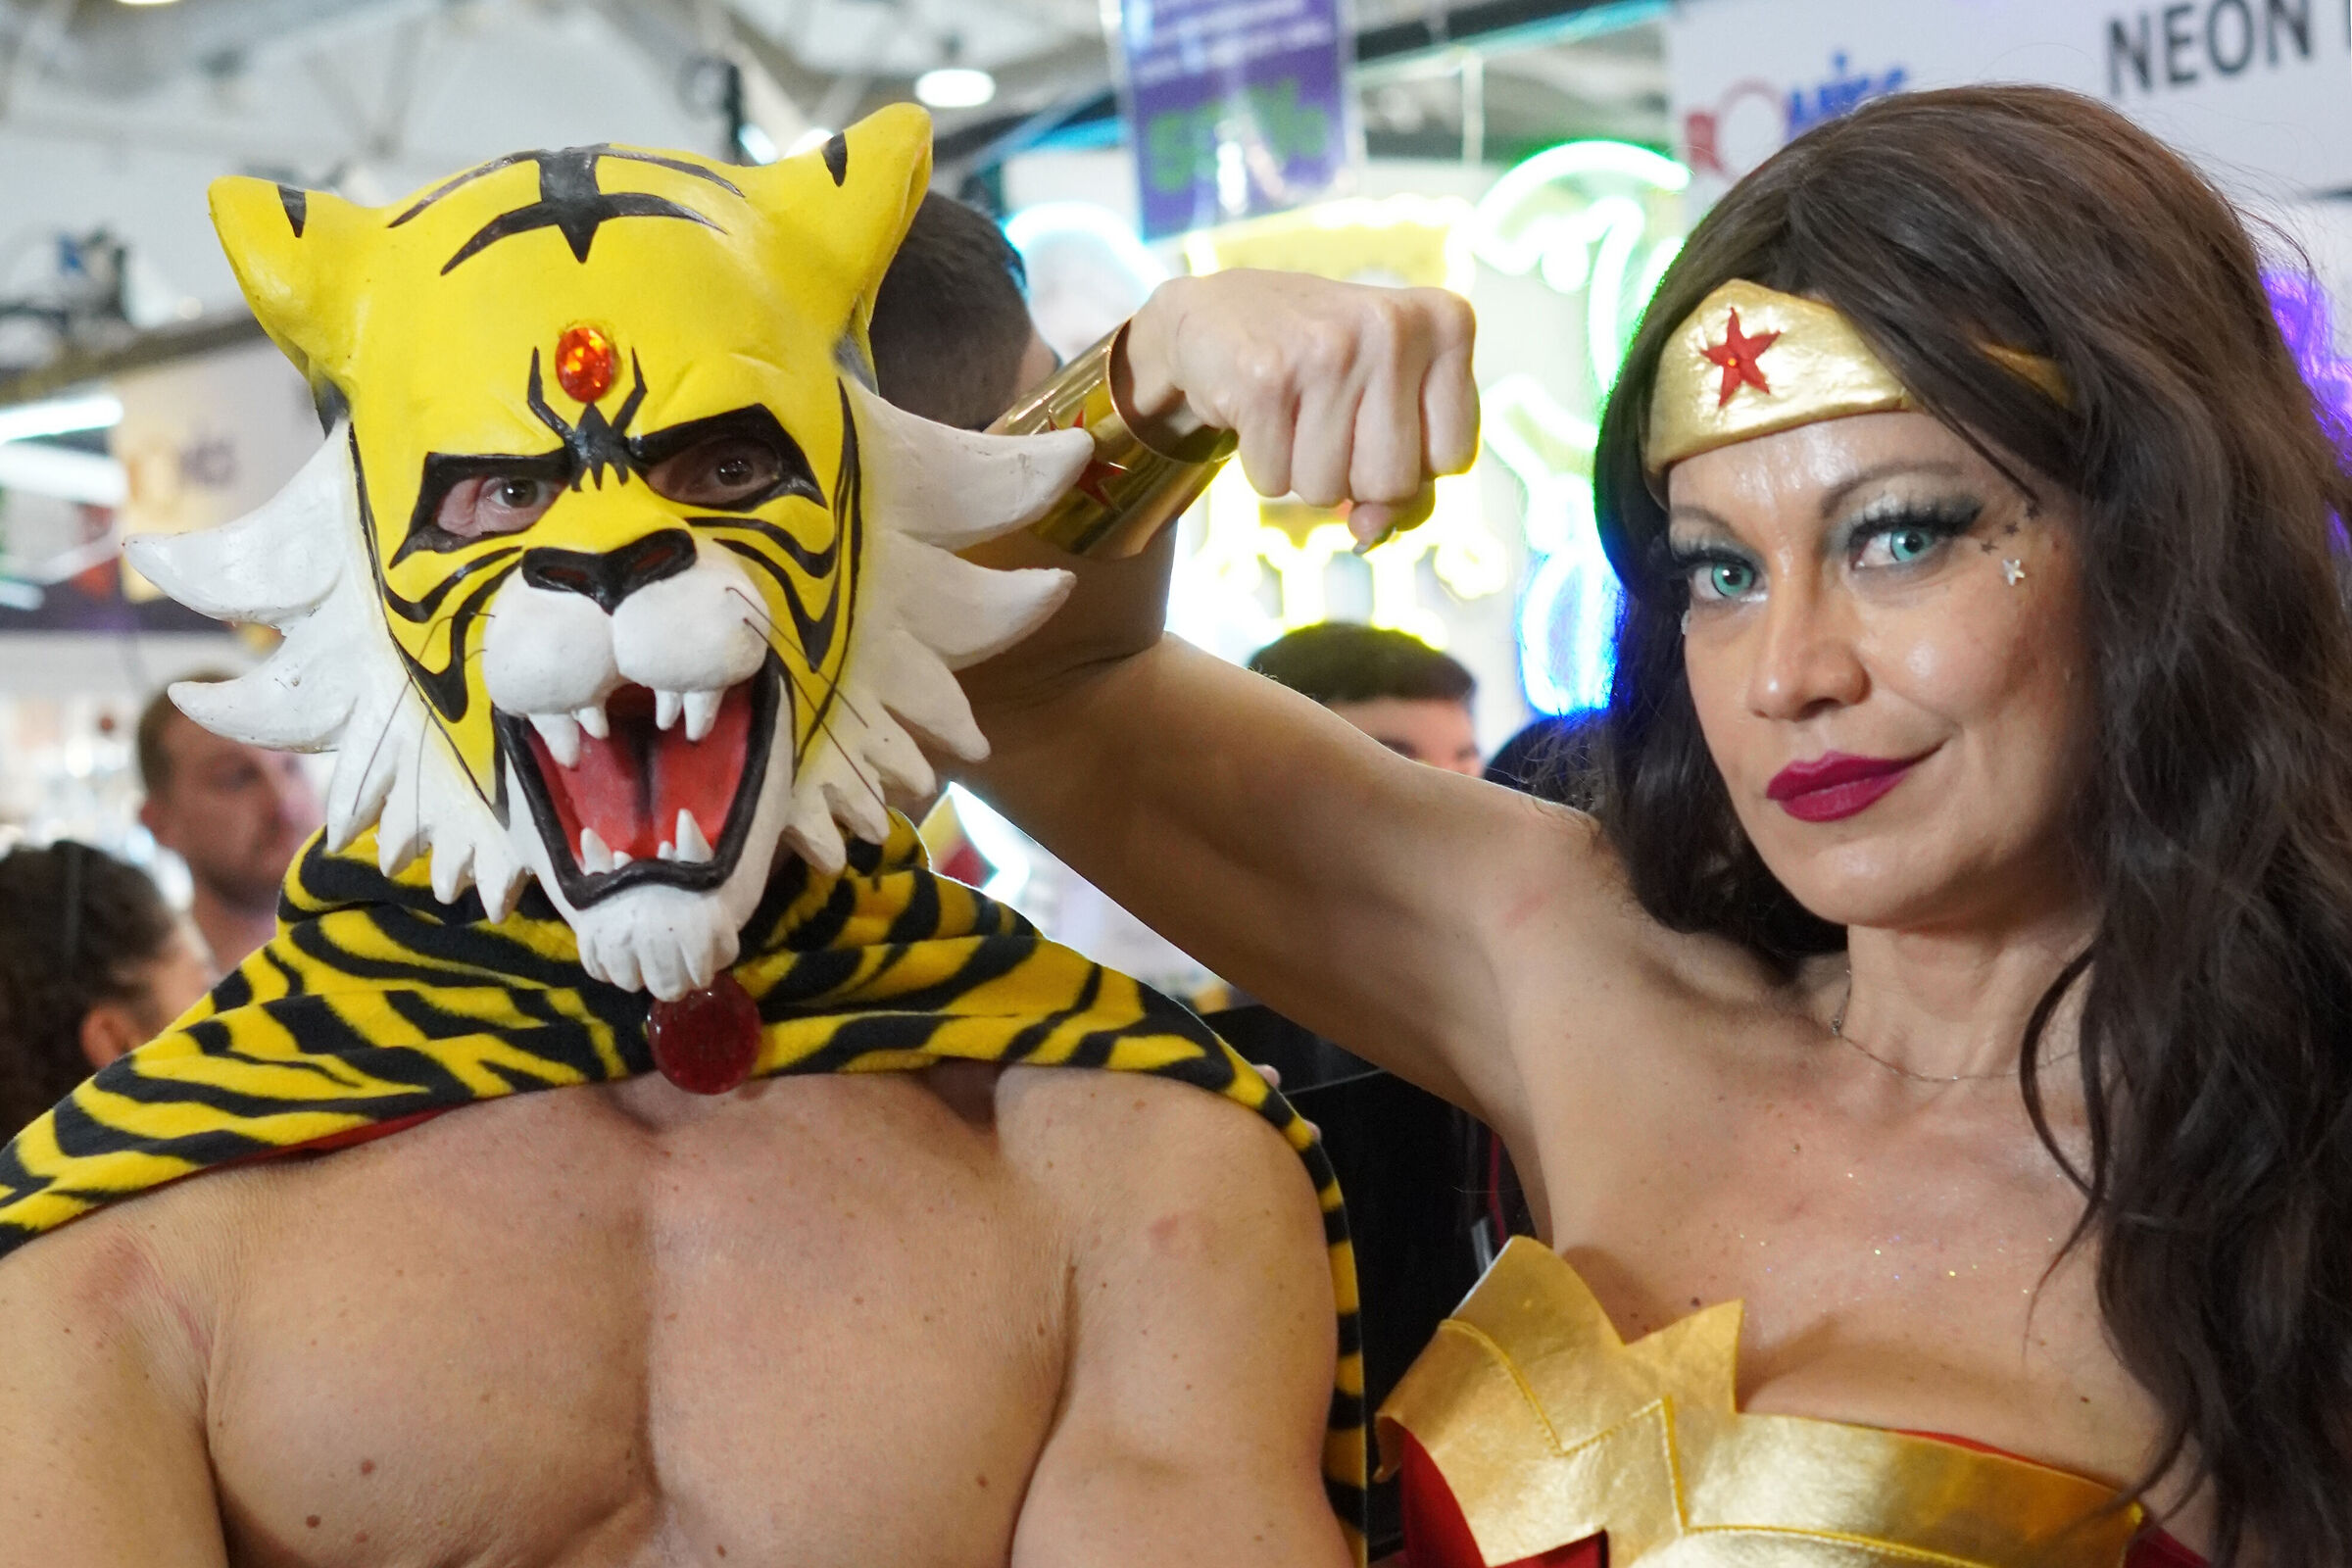 Wonder Woman versus Tiger Man...